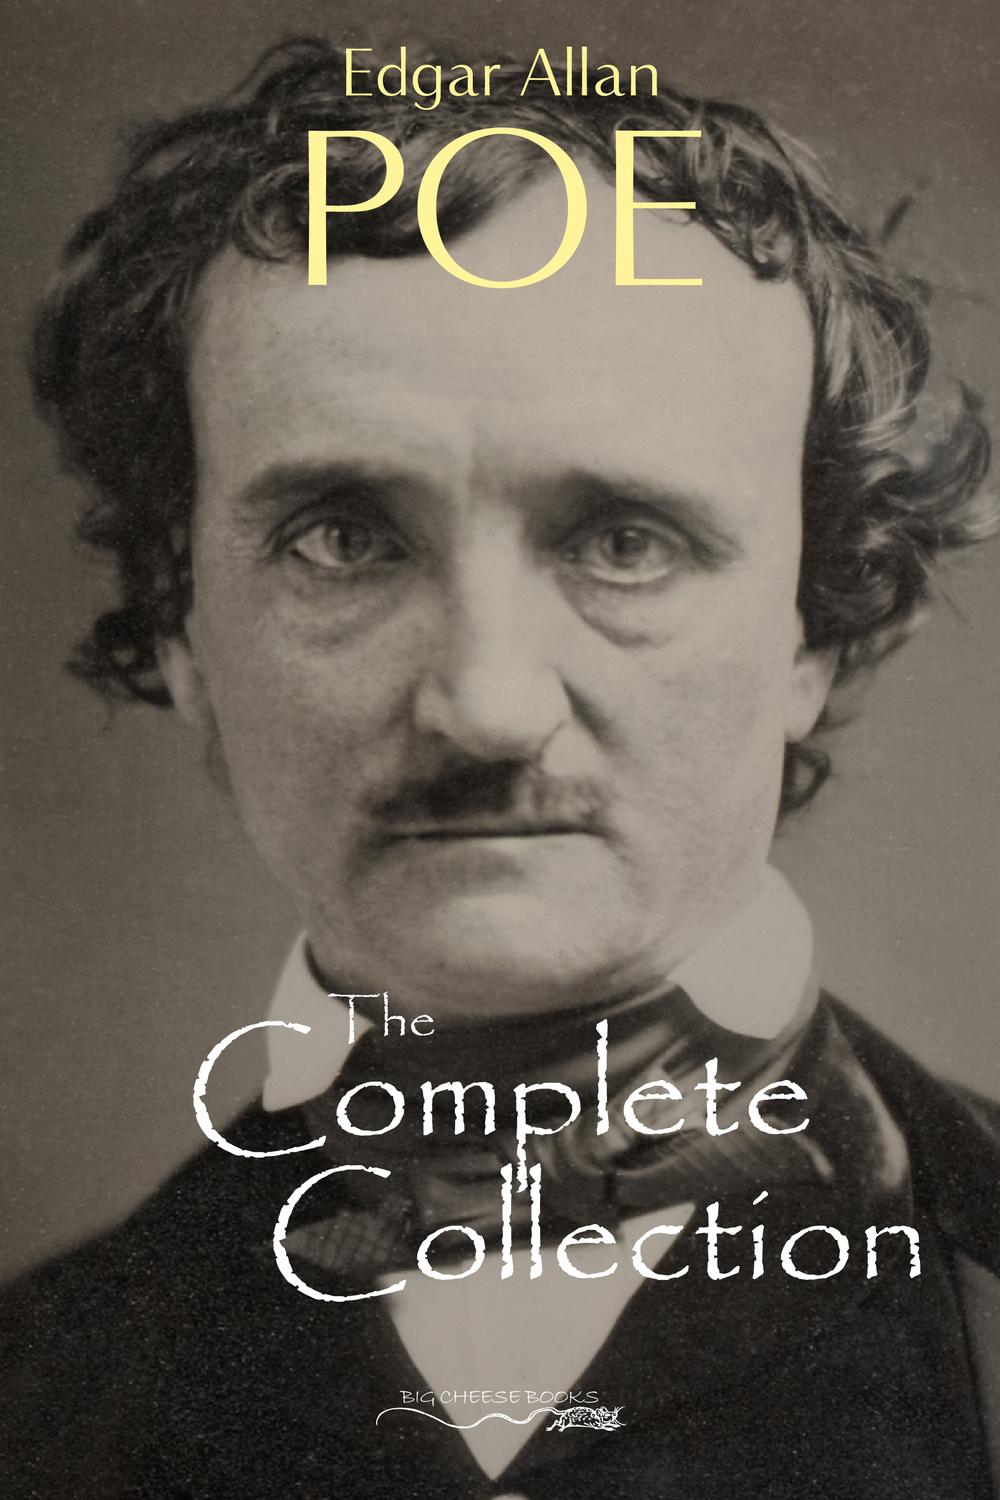 Edgar Allan Poe: The Complete Collection - Edgar Allan Poe